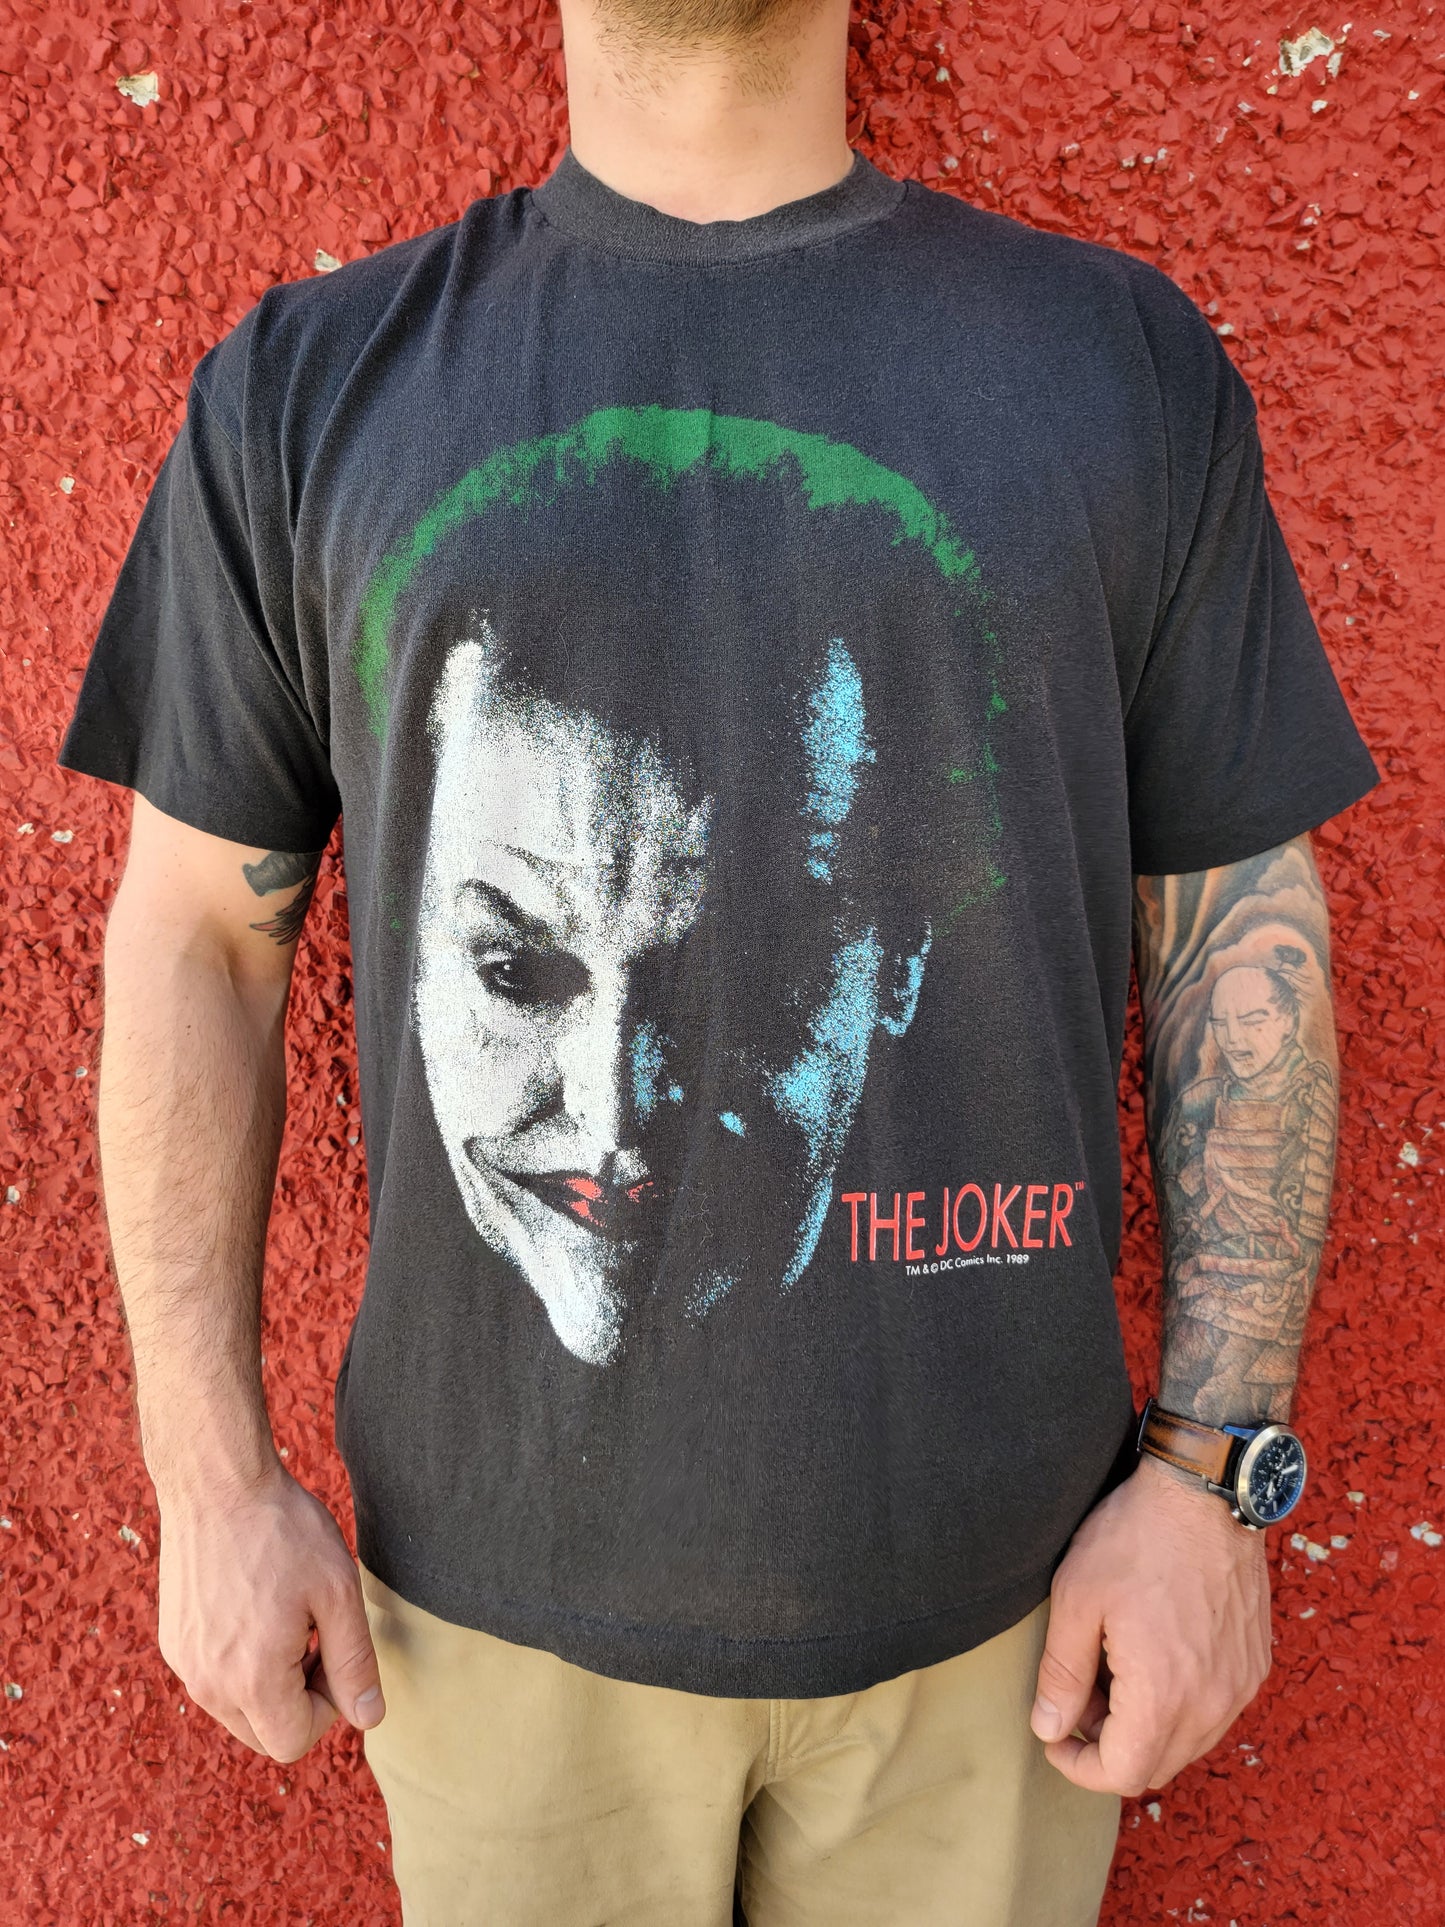 The Joker, 1989